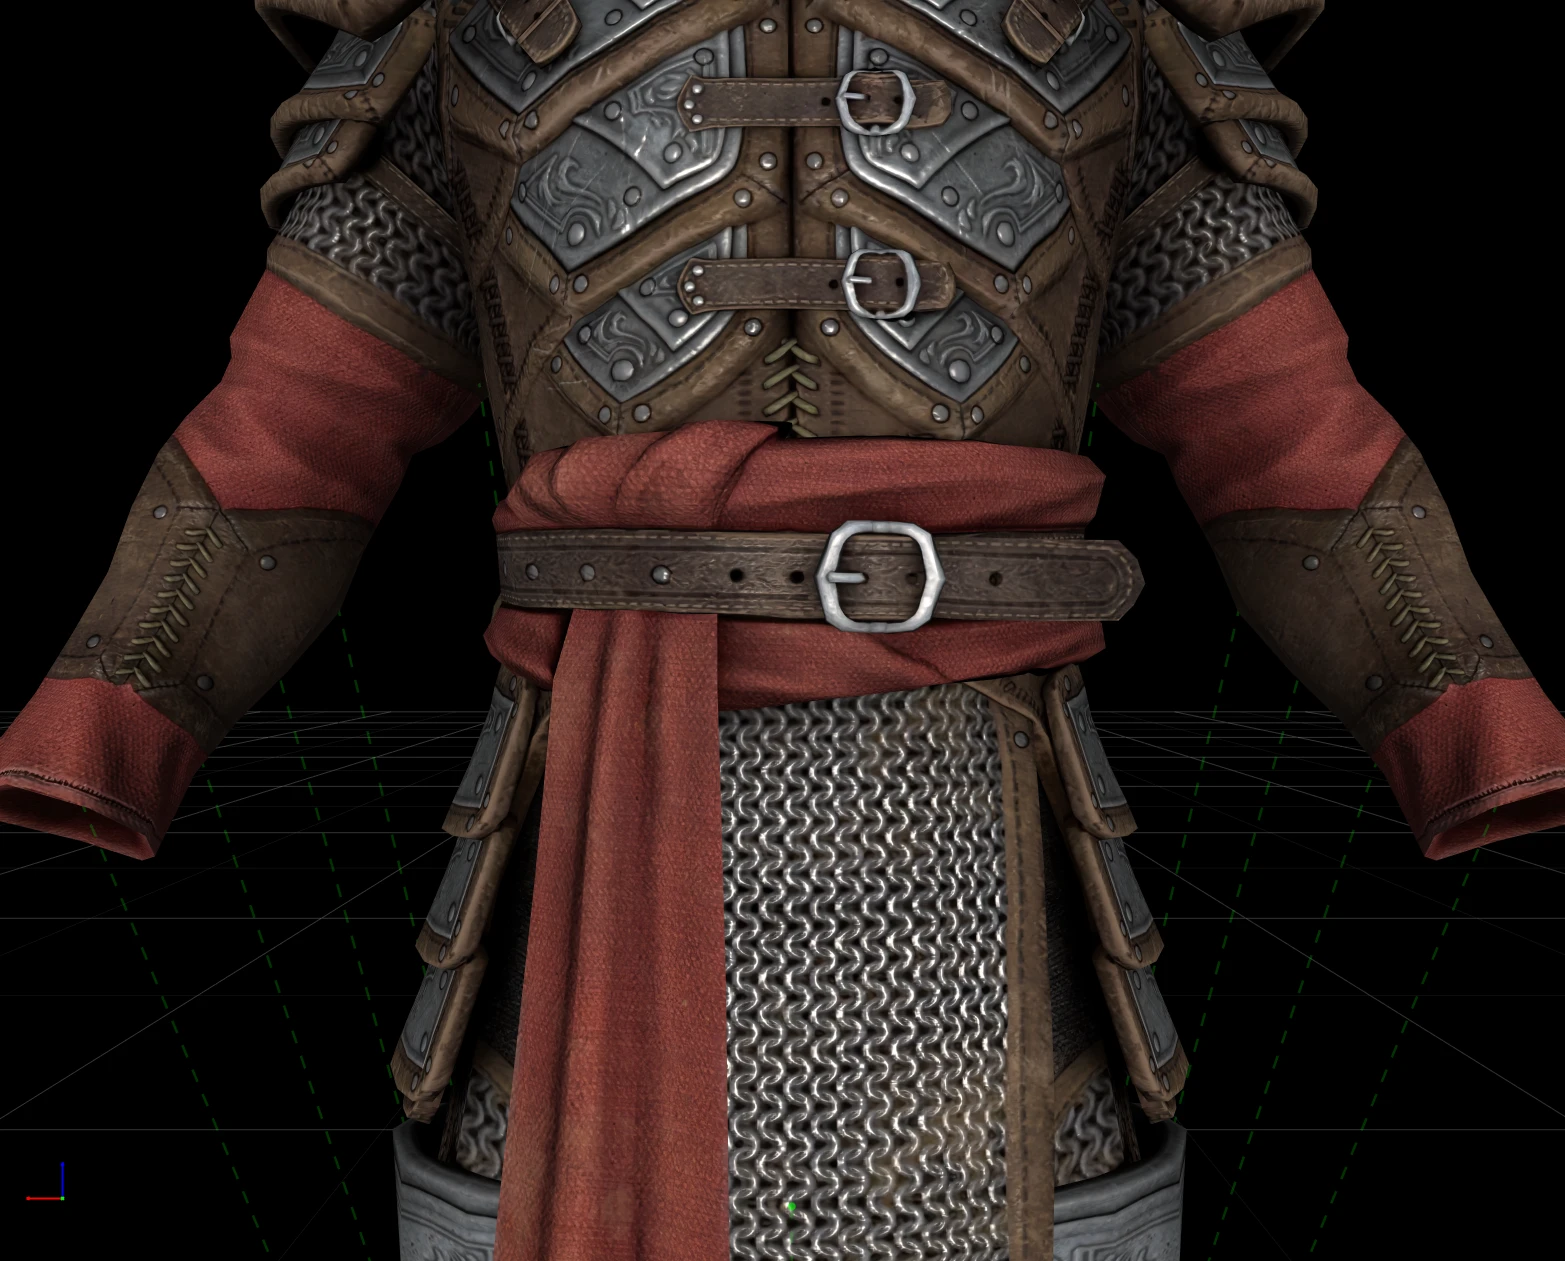 skyrim knight armor mod